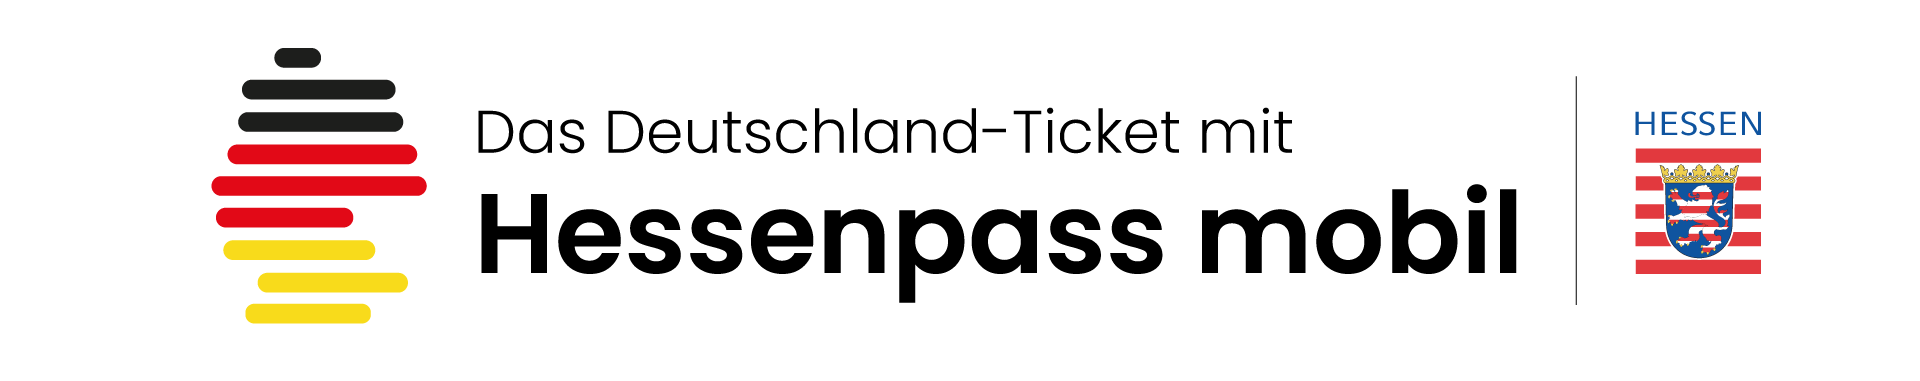 Das vergünstigte Deutschland-Ticket mit Hessenpass mobil